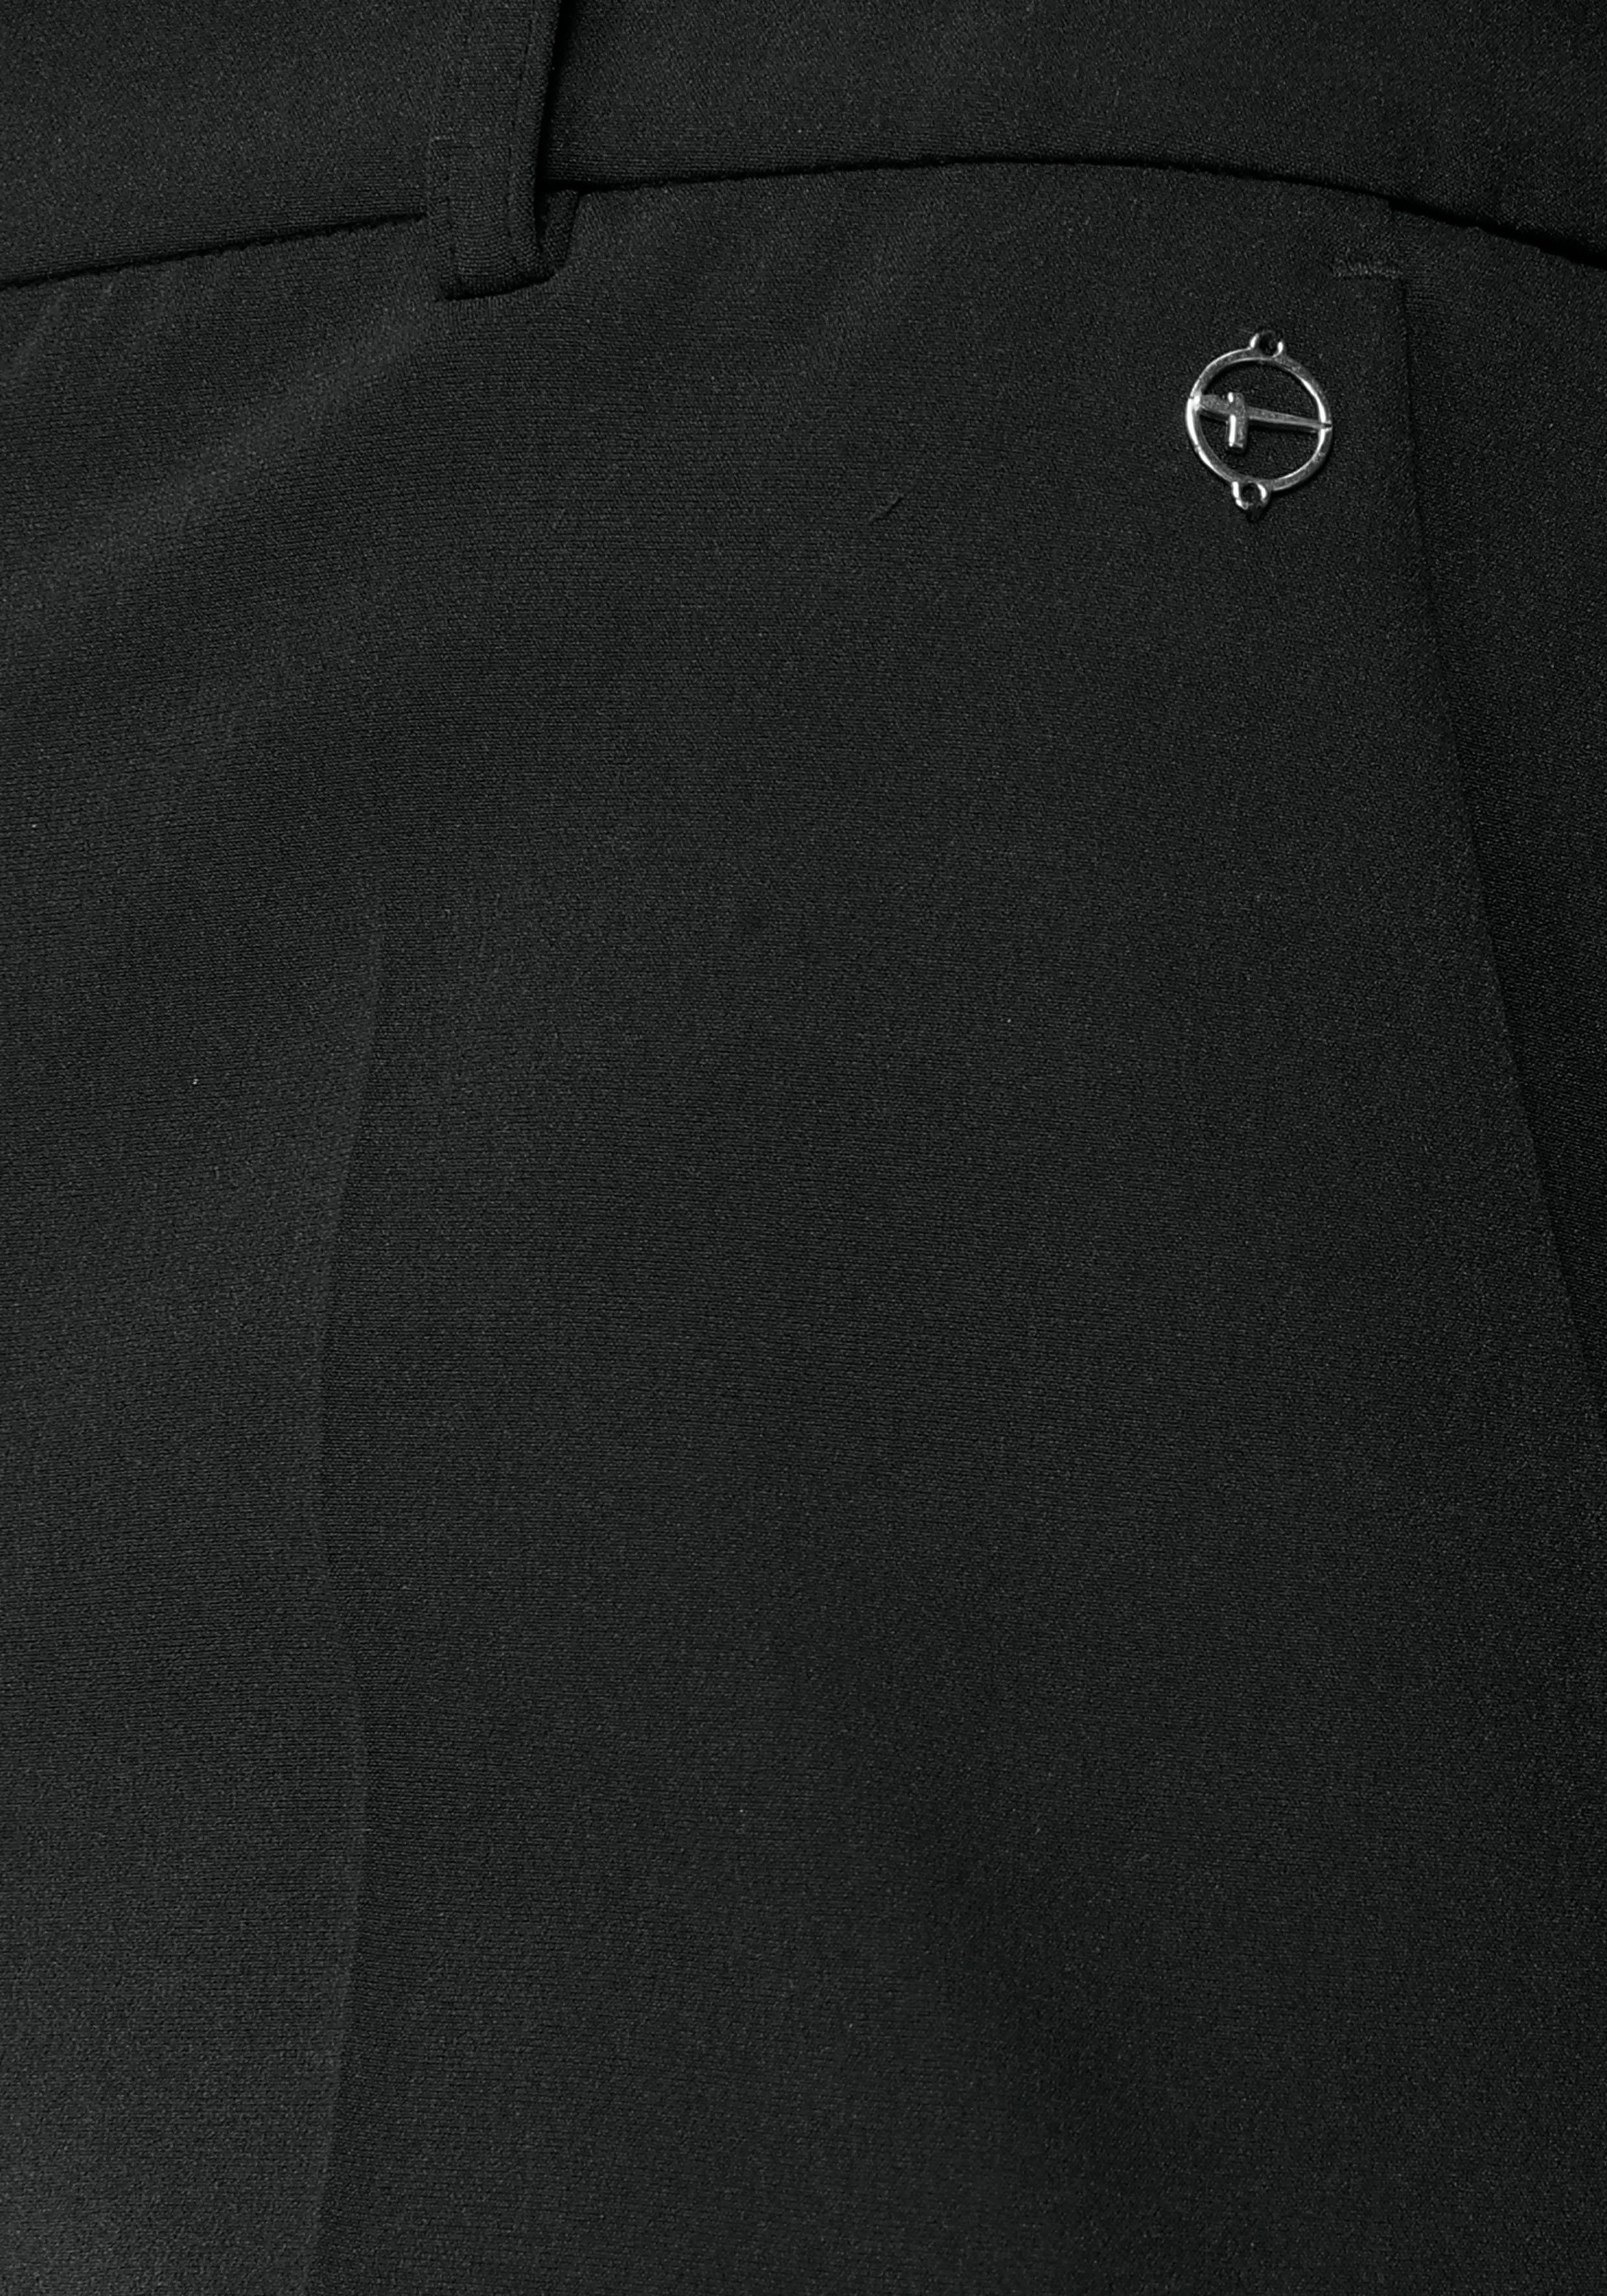 Tamaris Anzughose in schwarz nachhaltigem ( aus Material) Hose Trendfarben